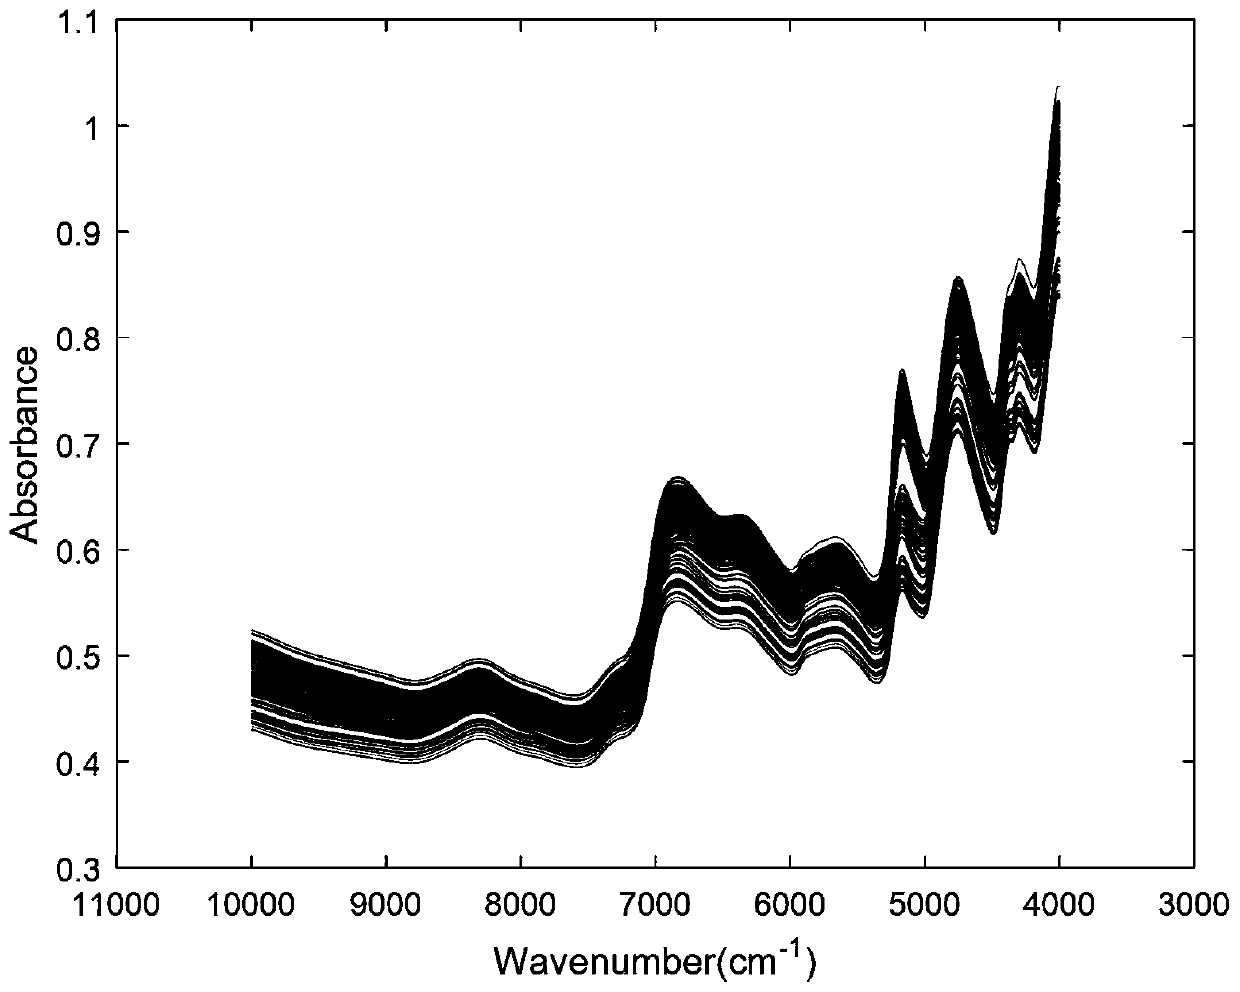 Model Transfer Method Based on Spectral Data